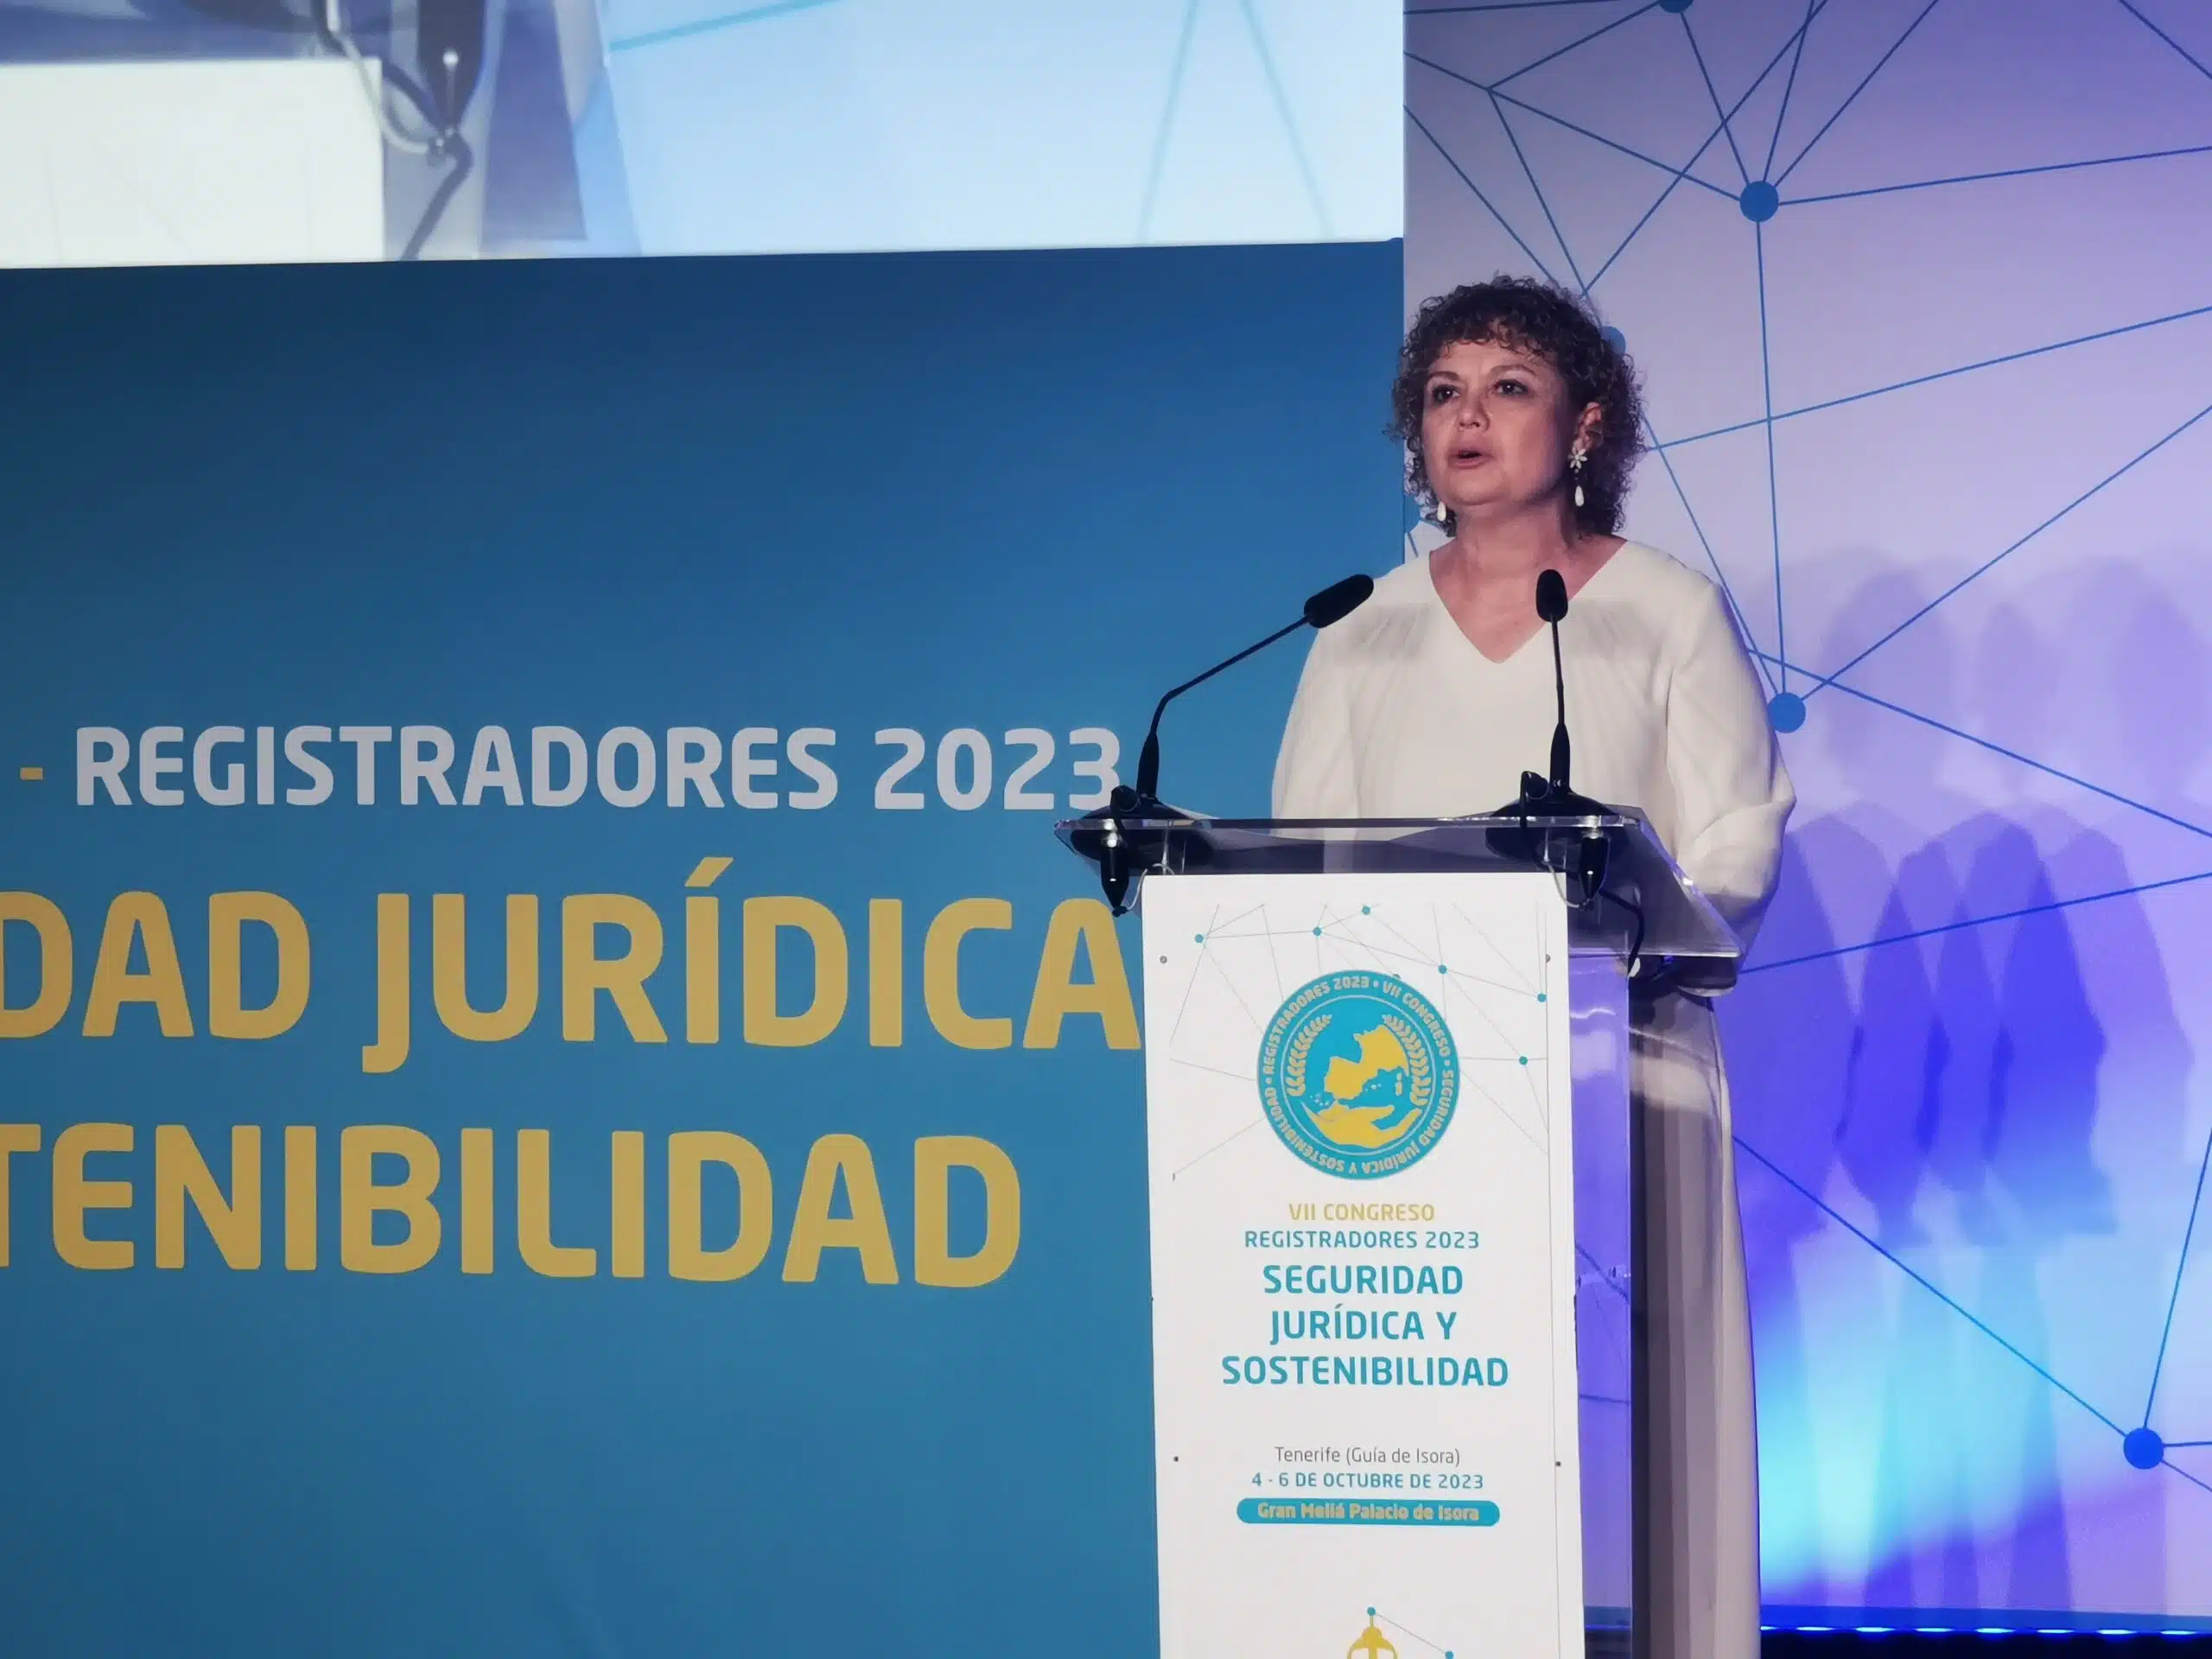 La decana de los Registradores, María Emilia Adán, reivindica la seguridad jurídica y la sostenibilidad como ejes de futuro